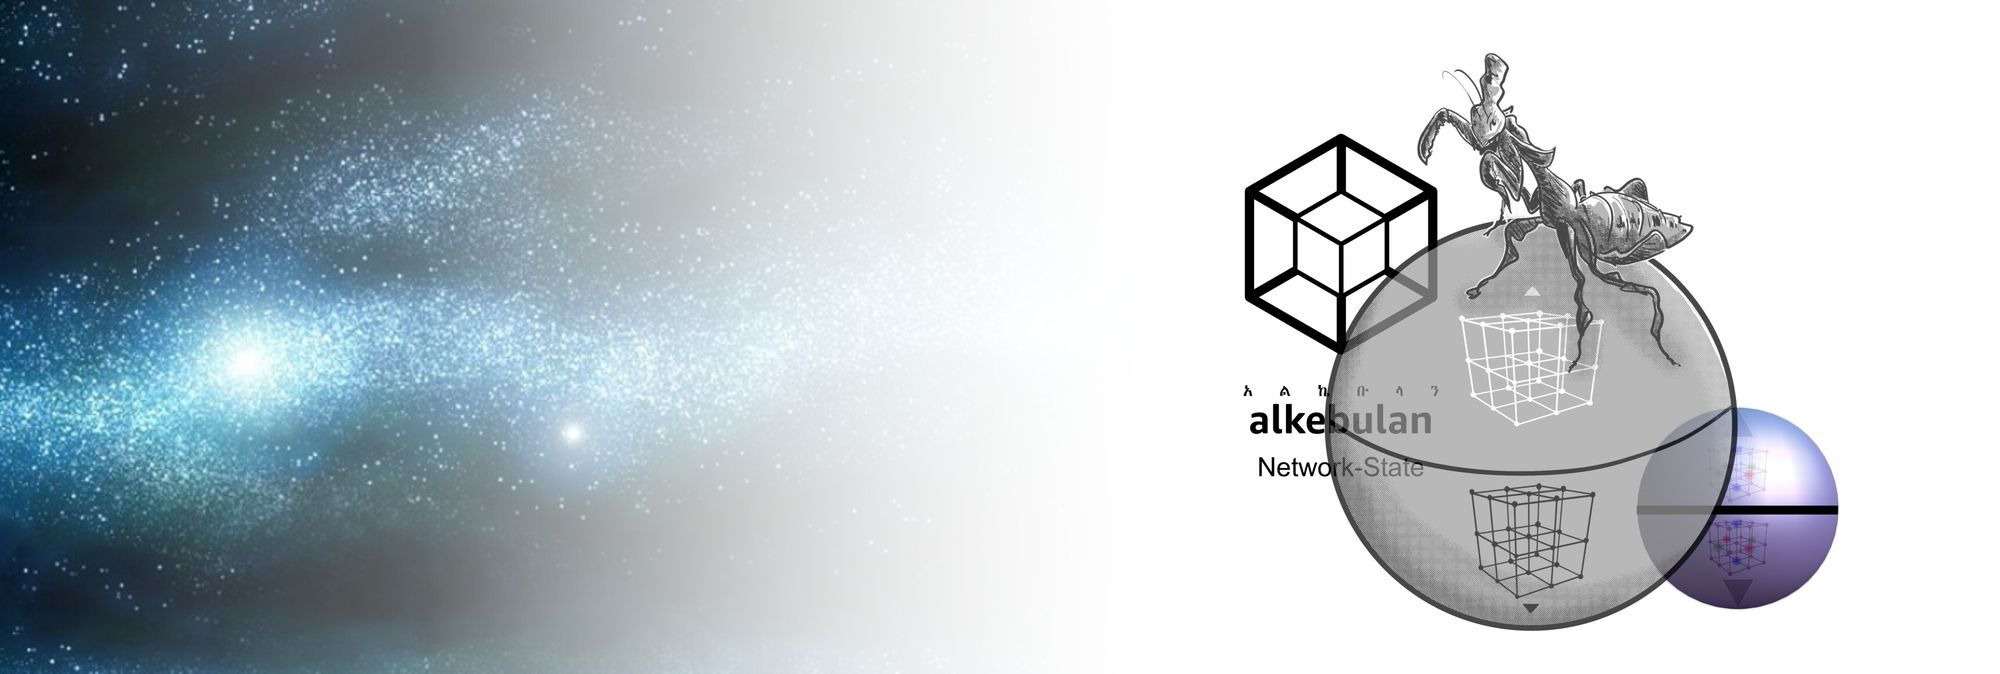 AlkebulanMeta - Alkebulan Network-State